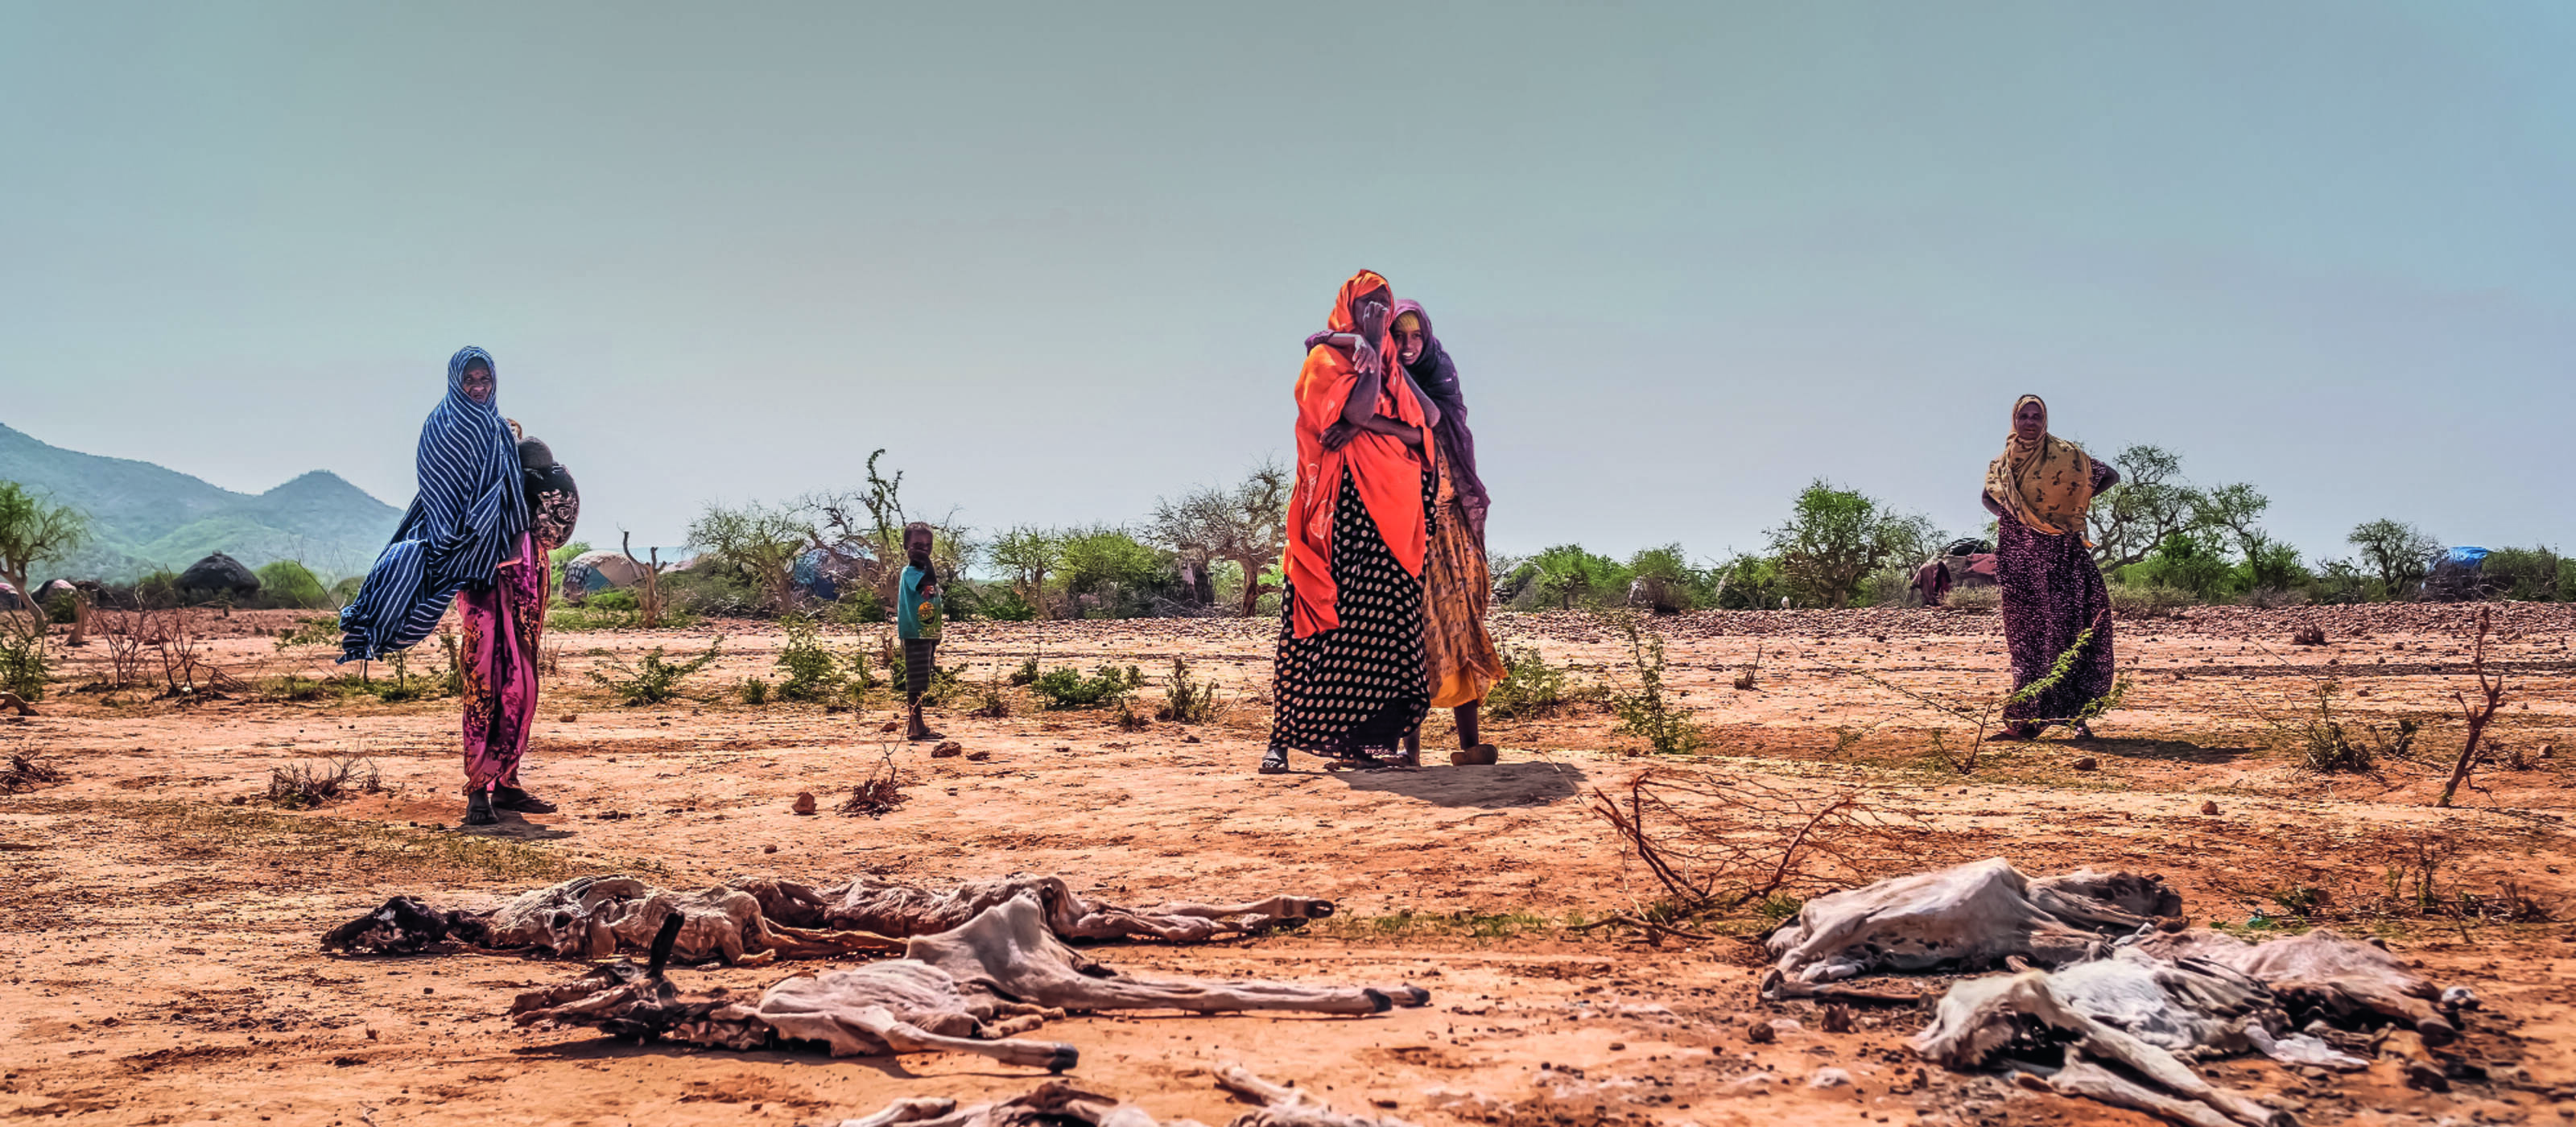 Die schlimmste Dürre seit über 40 Jahren ist die Folge der Klimaerhitzung, welche die Ärmsten am meisten trifft.